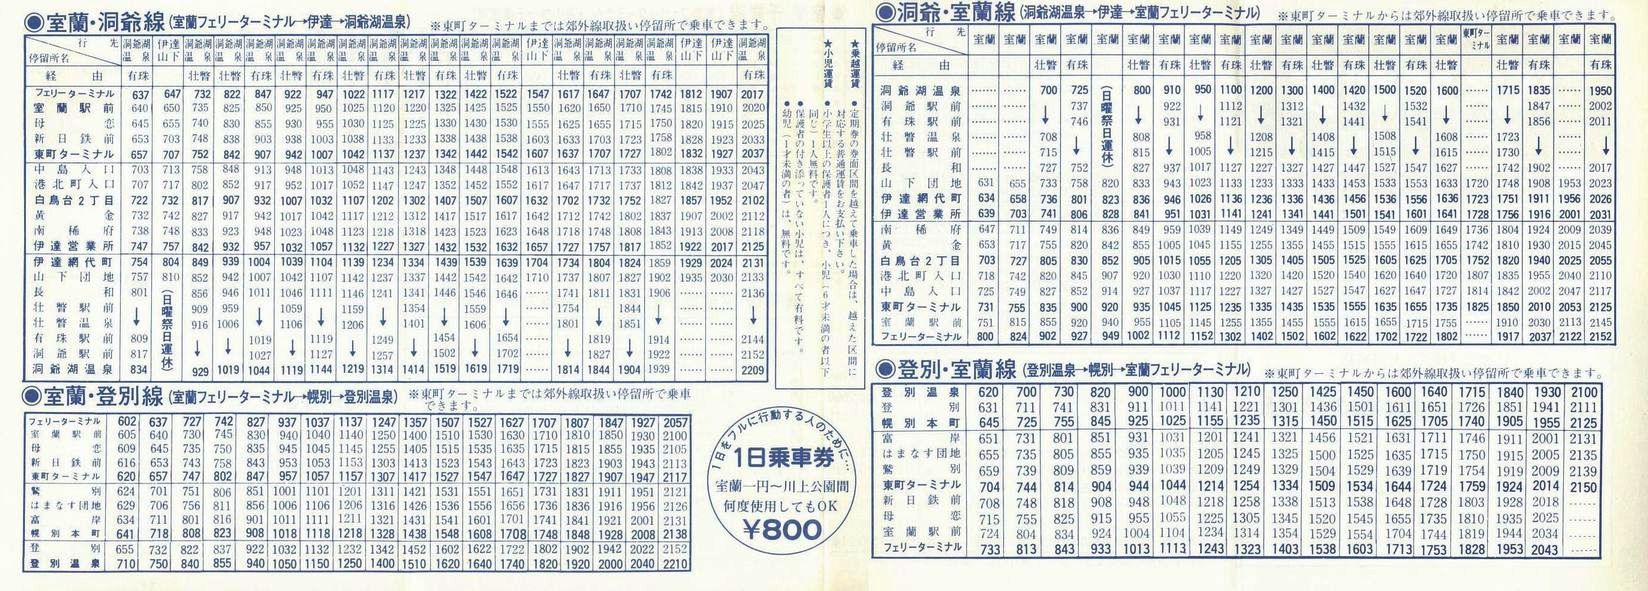 1987-04-01_oX_ōxO\